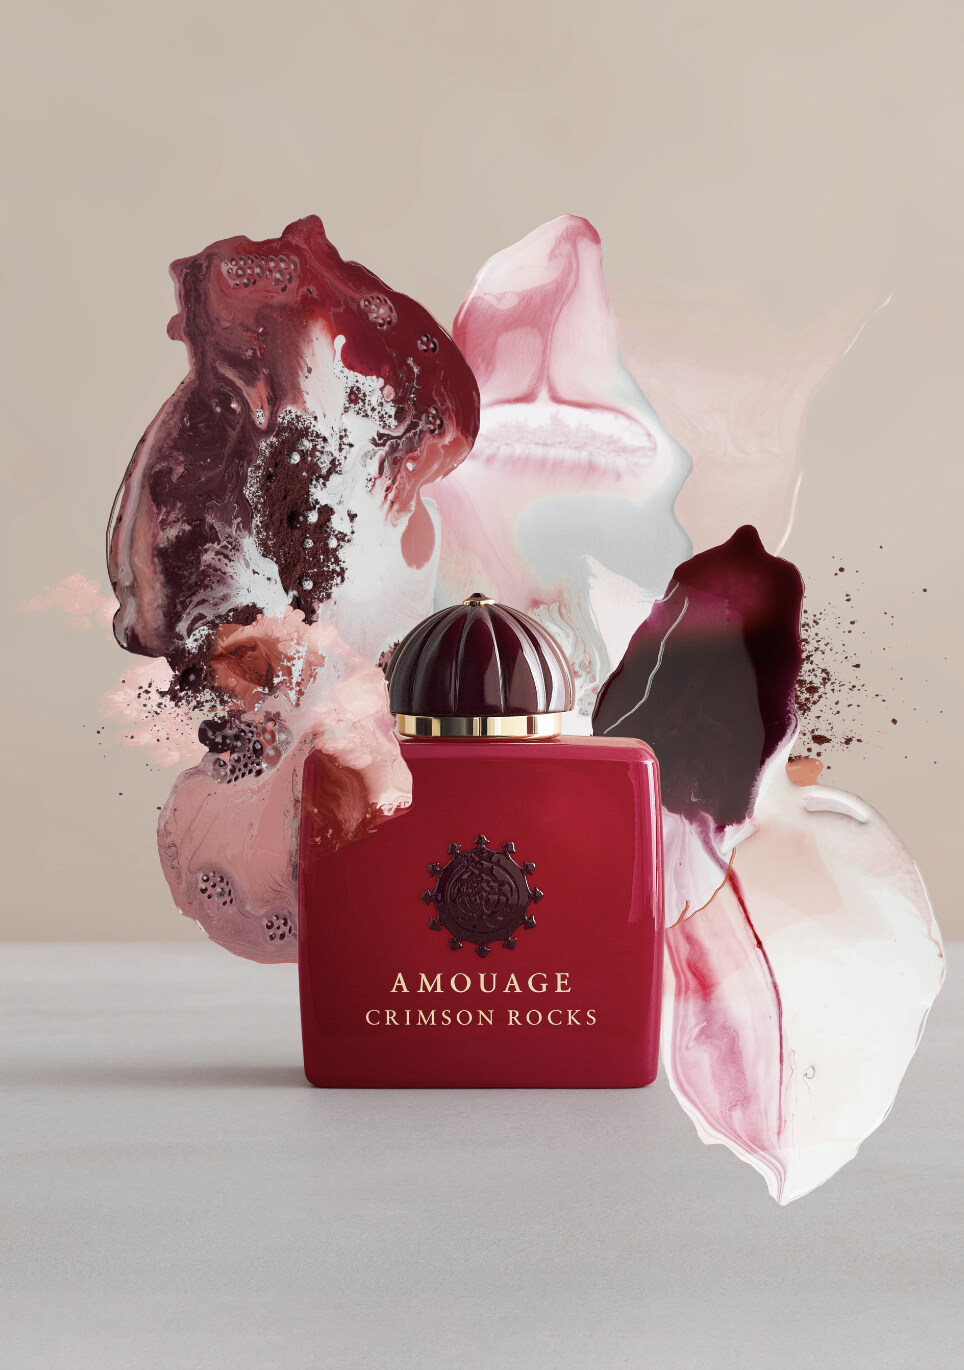 ممارس المهنة حظا سعيدا بشكل صحيح  Enclave by Amouage » Reviews & Perfume Facts